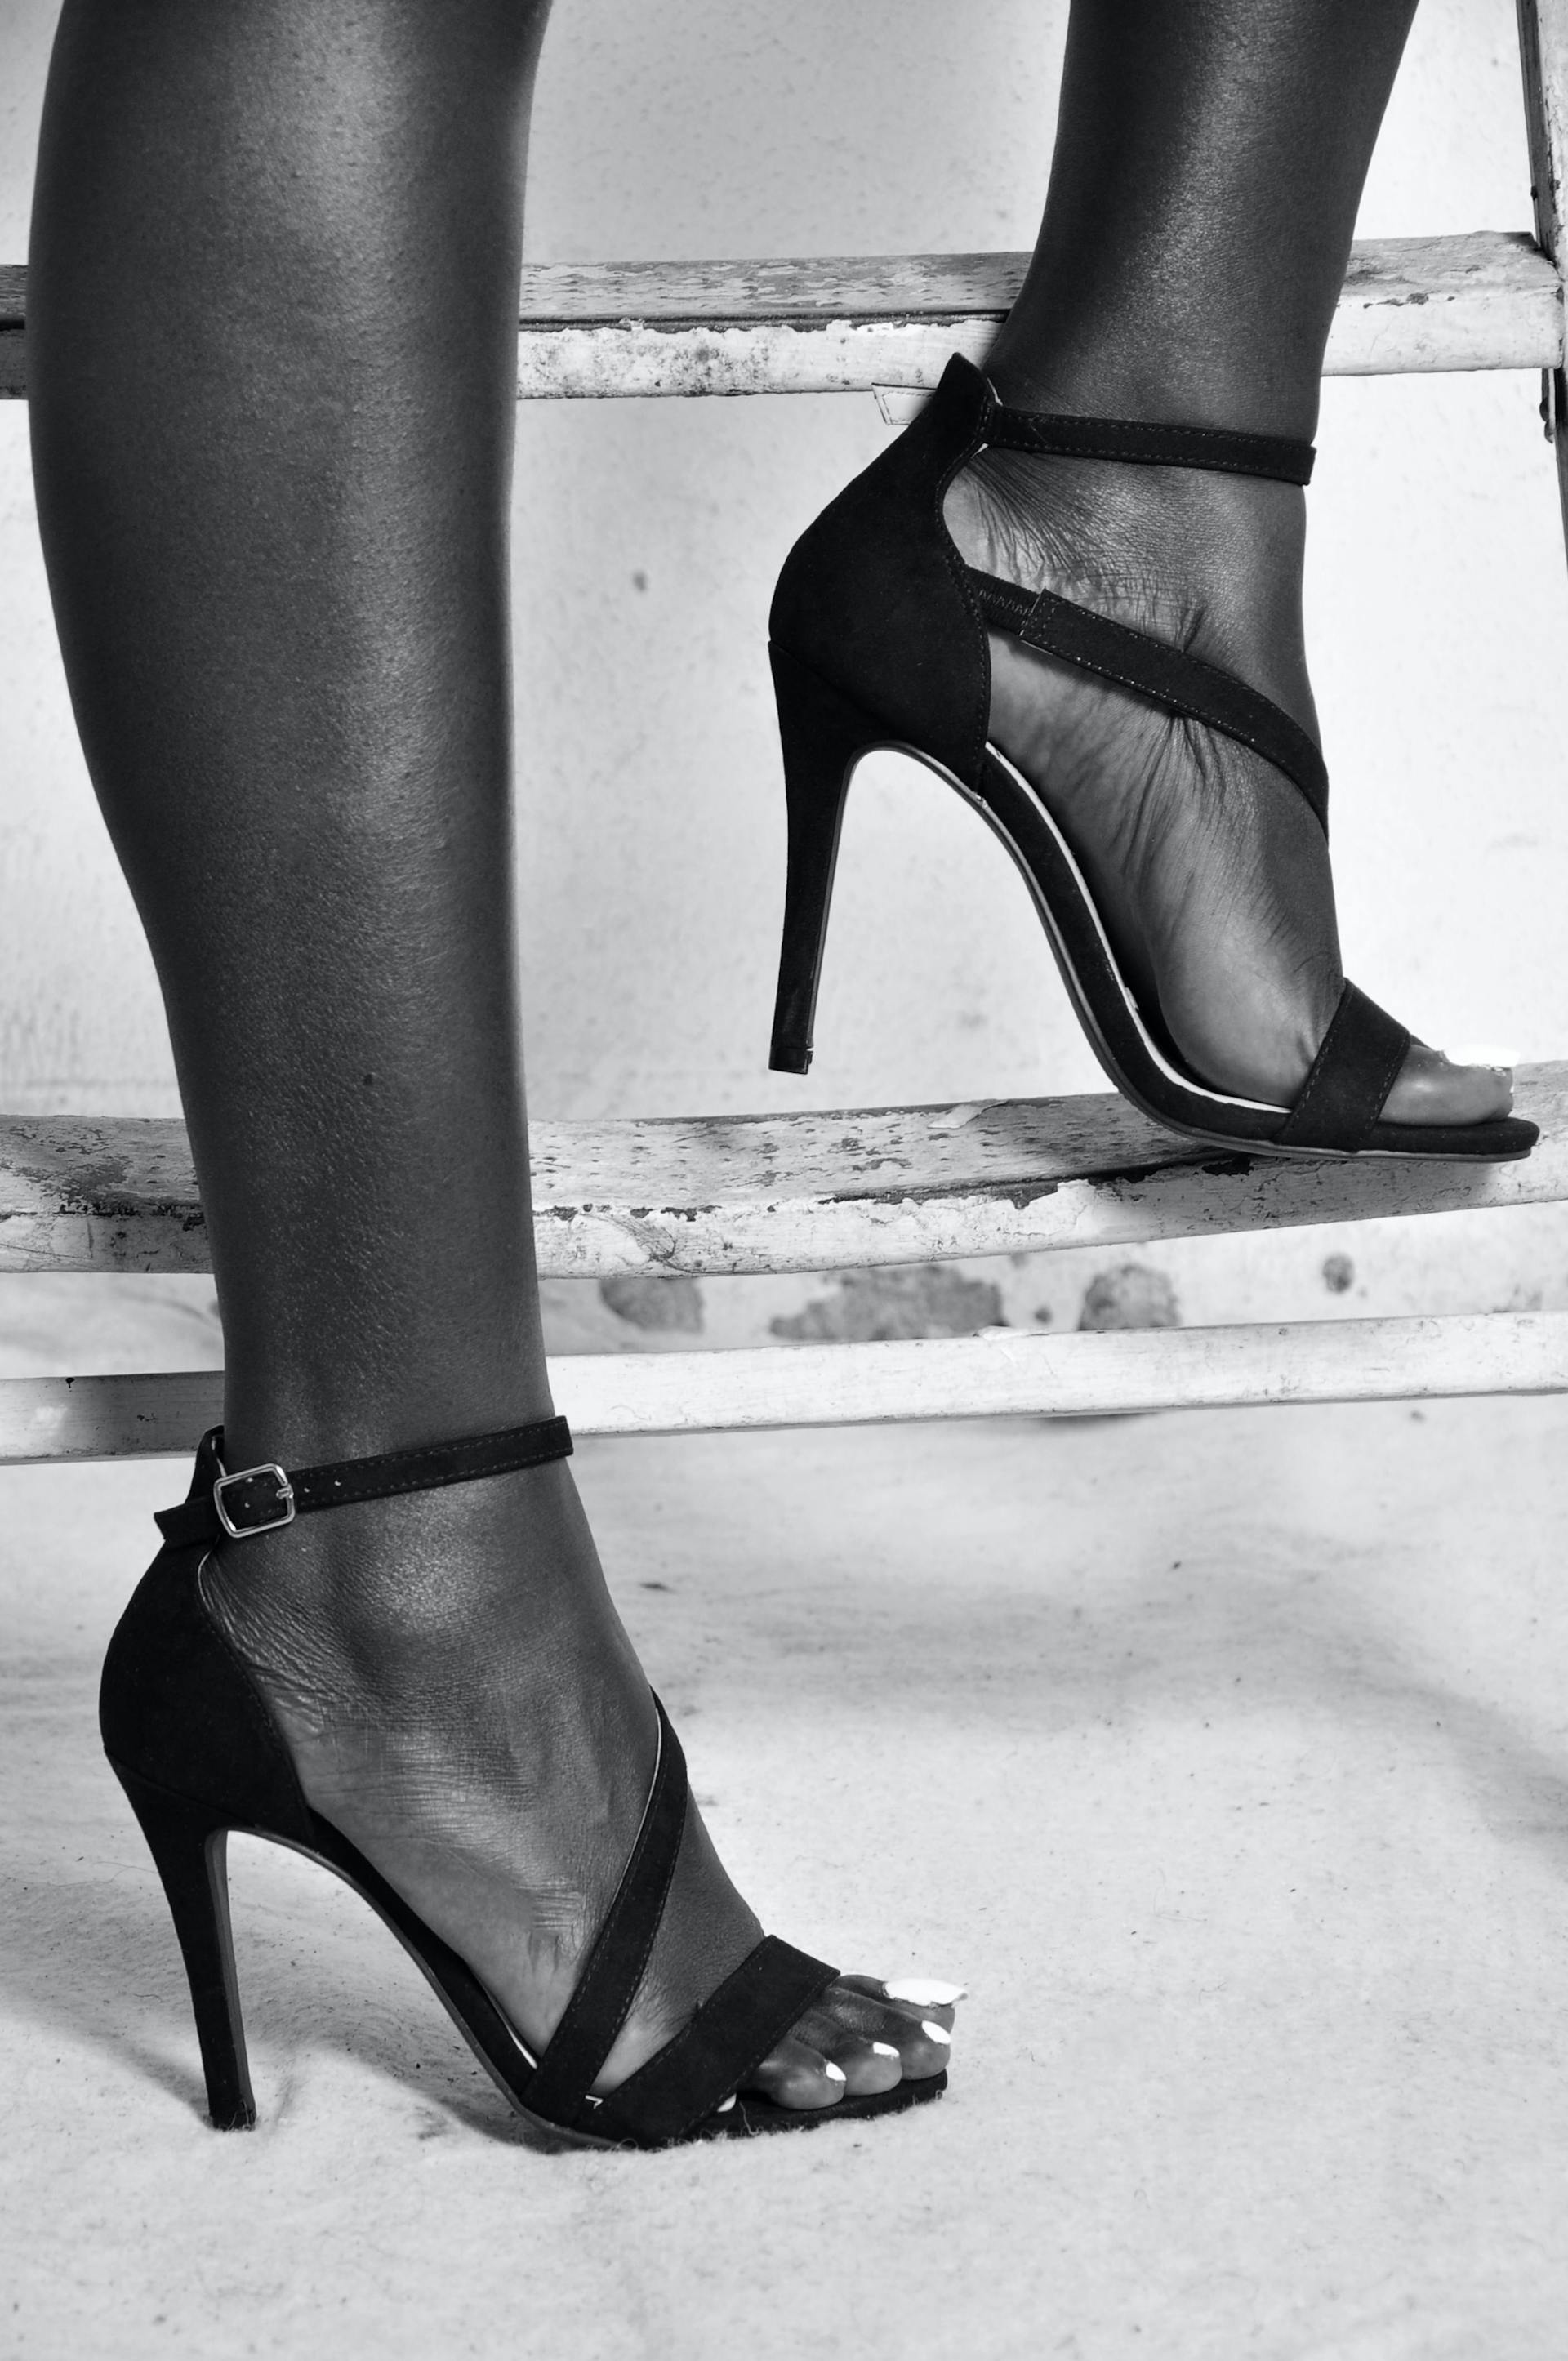 Women Heels